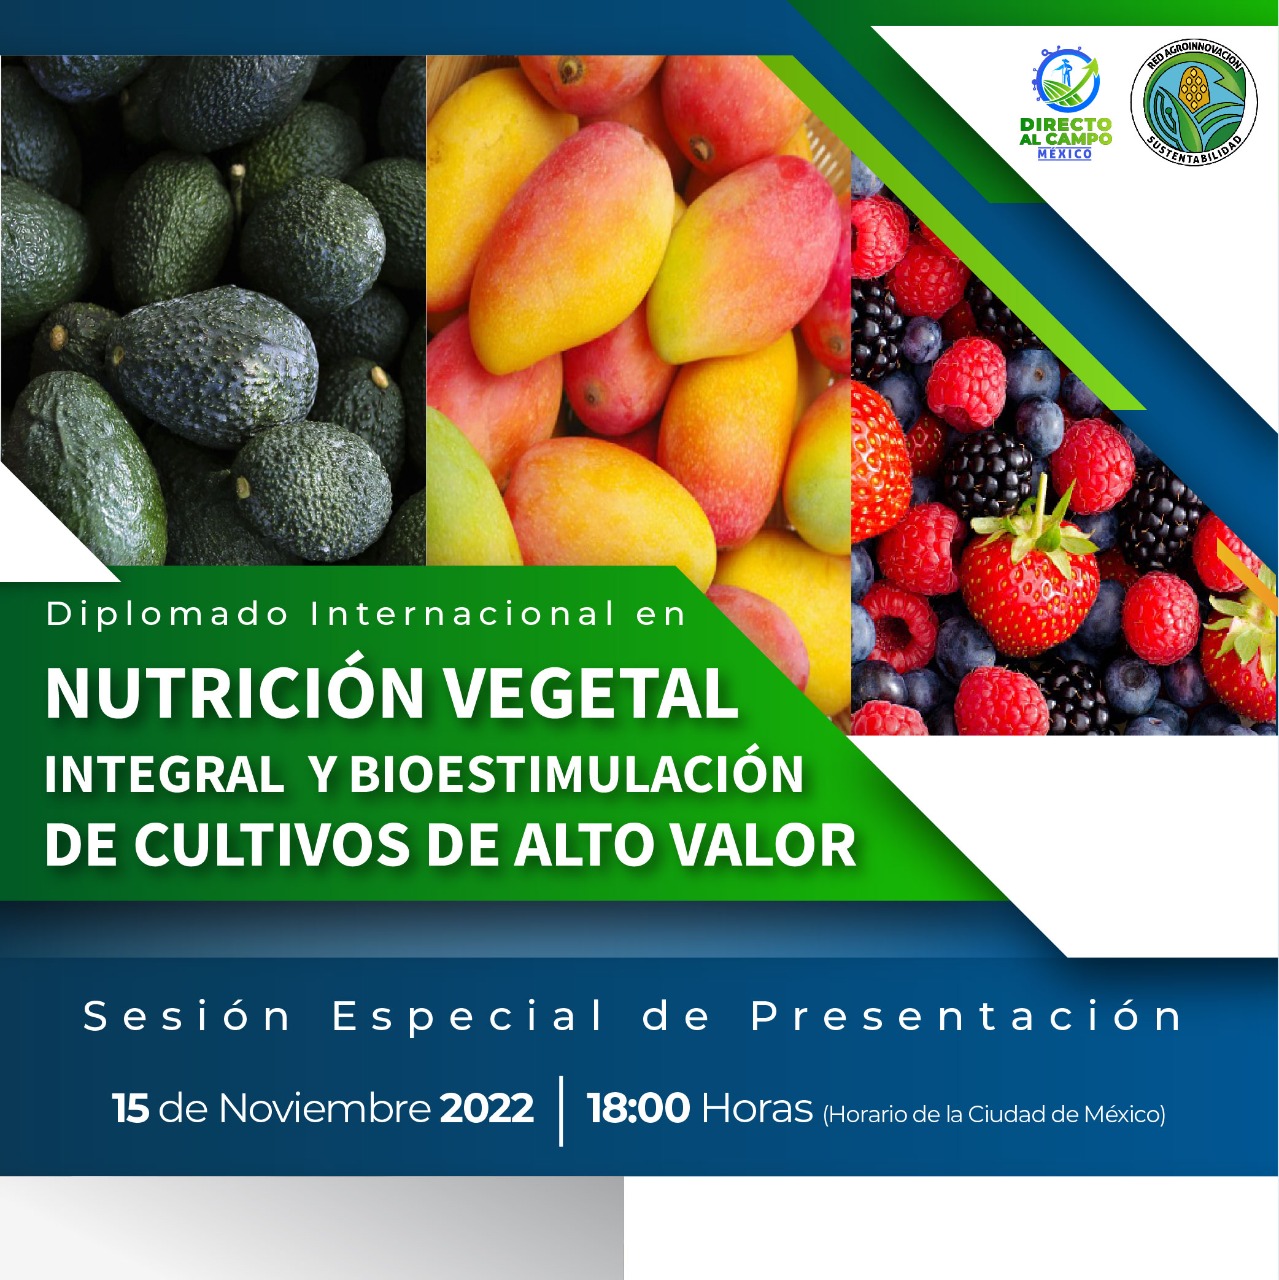 Presenta Directo al Campo y la Red Agroinnovación Diplomado Internacional en NUTRICIÓN VEGETAL